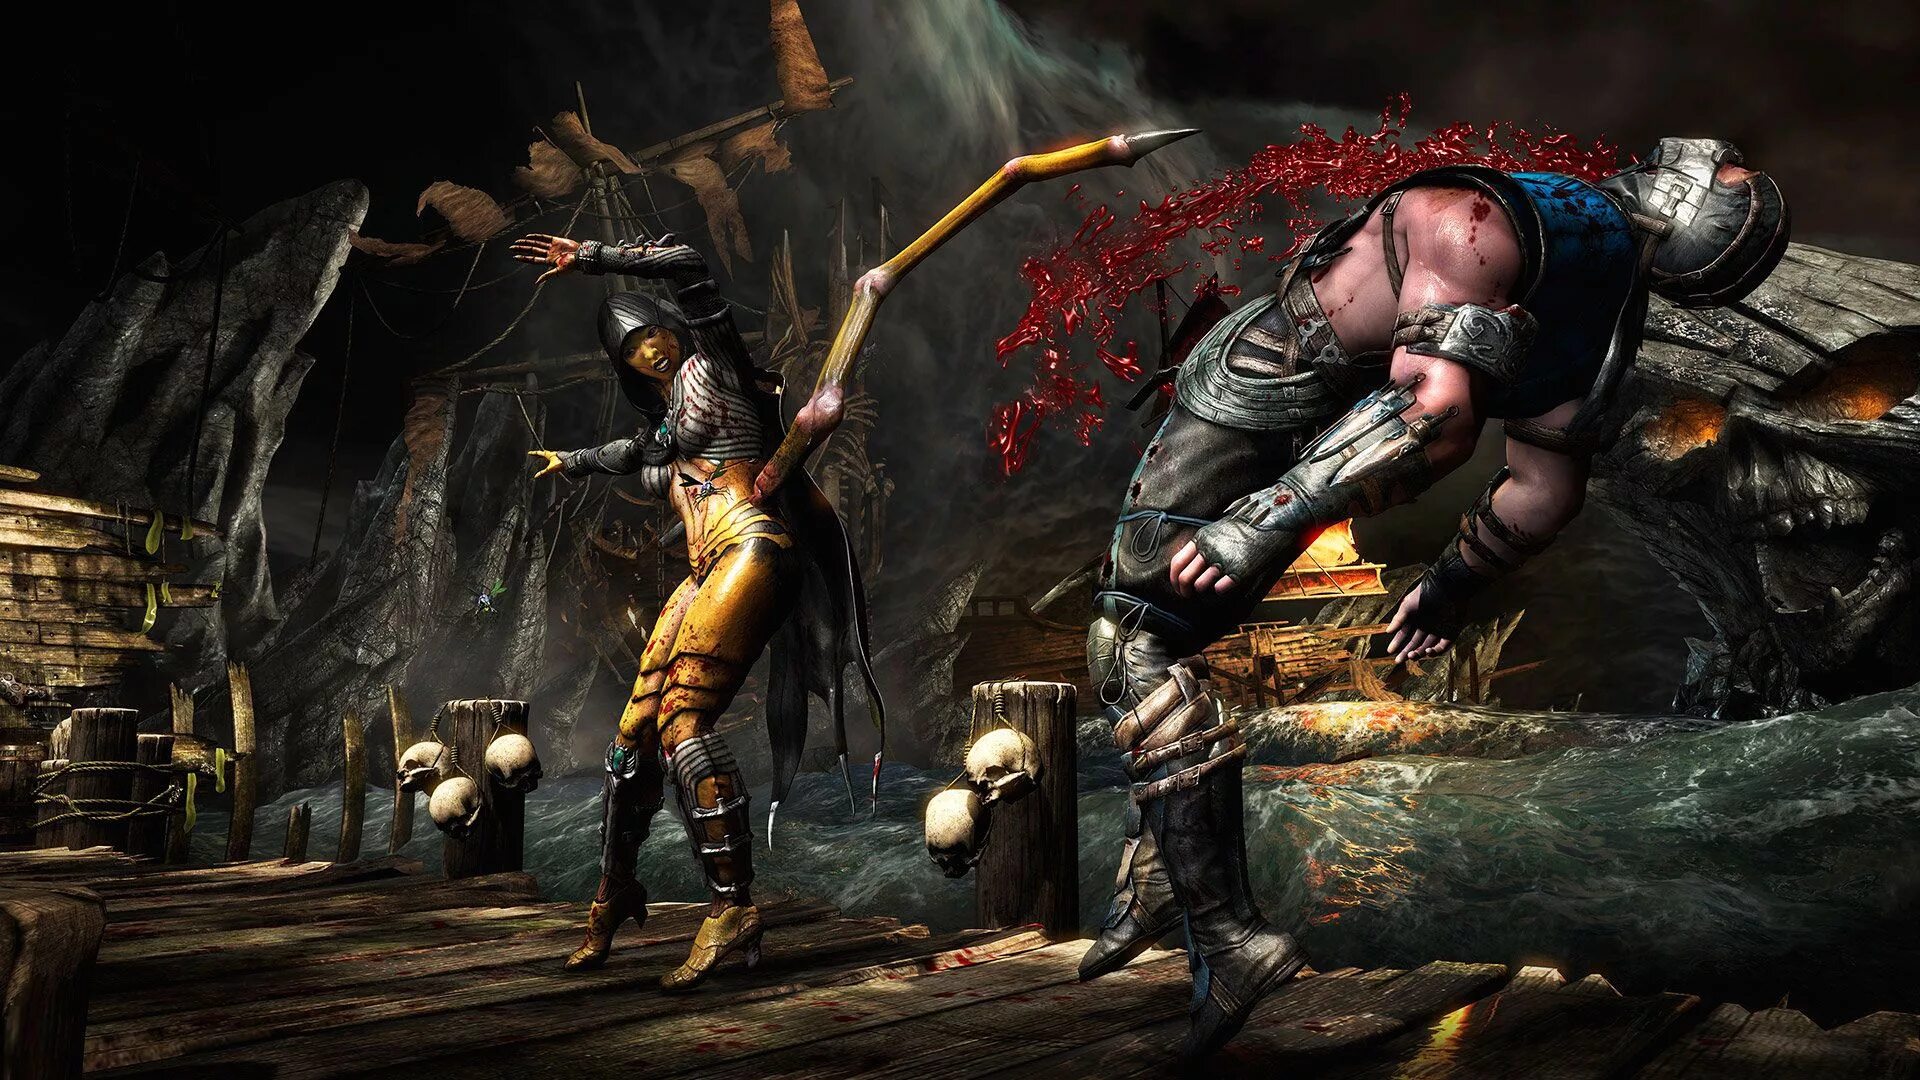 Mortal Kombat x ps4. Mortal Kombat XL Xbox 360. Mortal Kombat XL ps4. Мортал комбат 10 фаталити. Мортал комбат игра кода